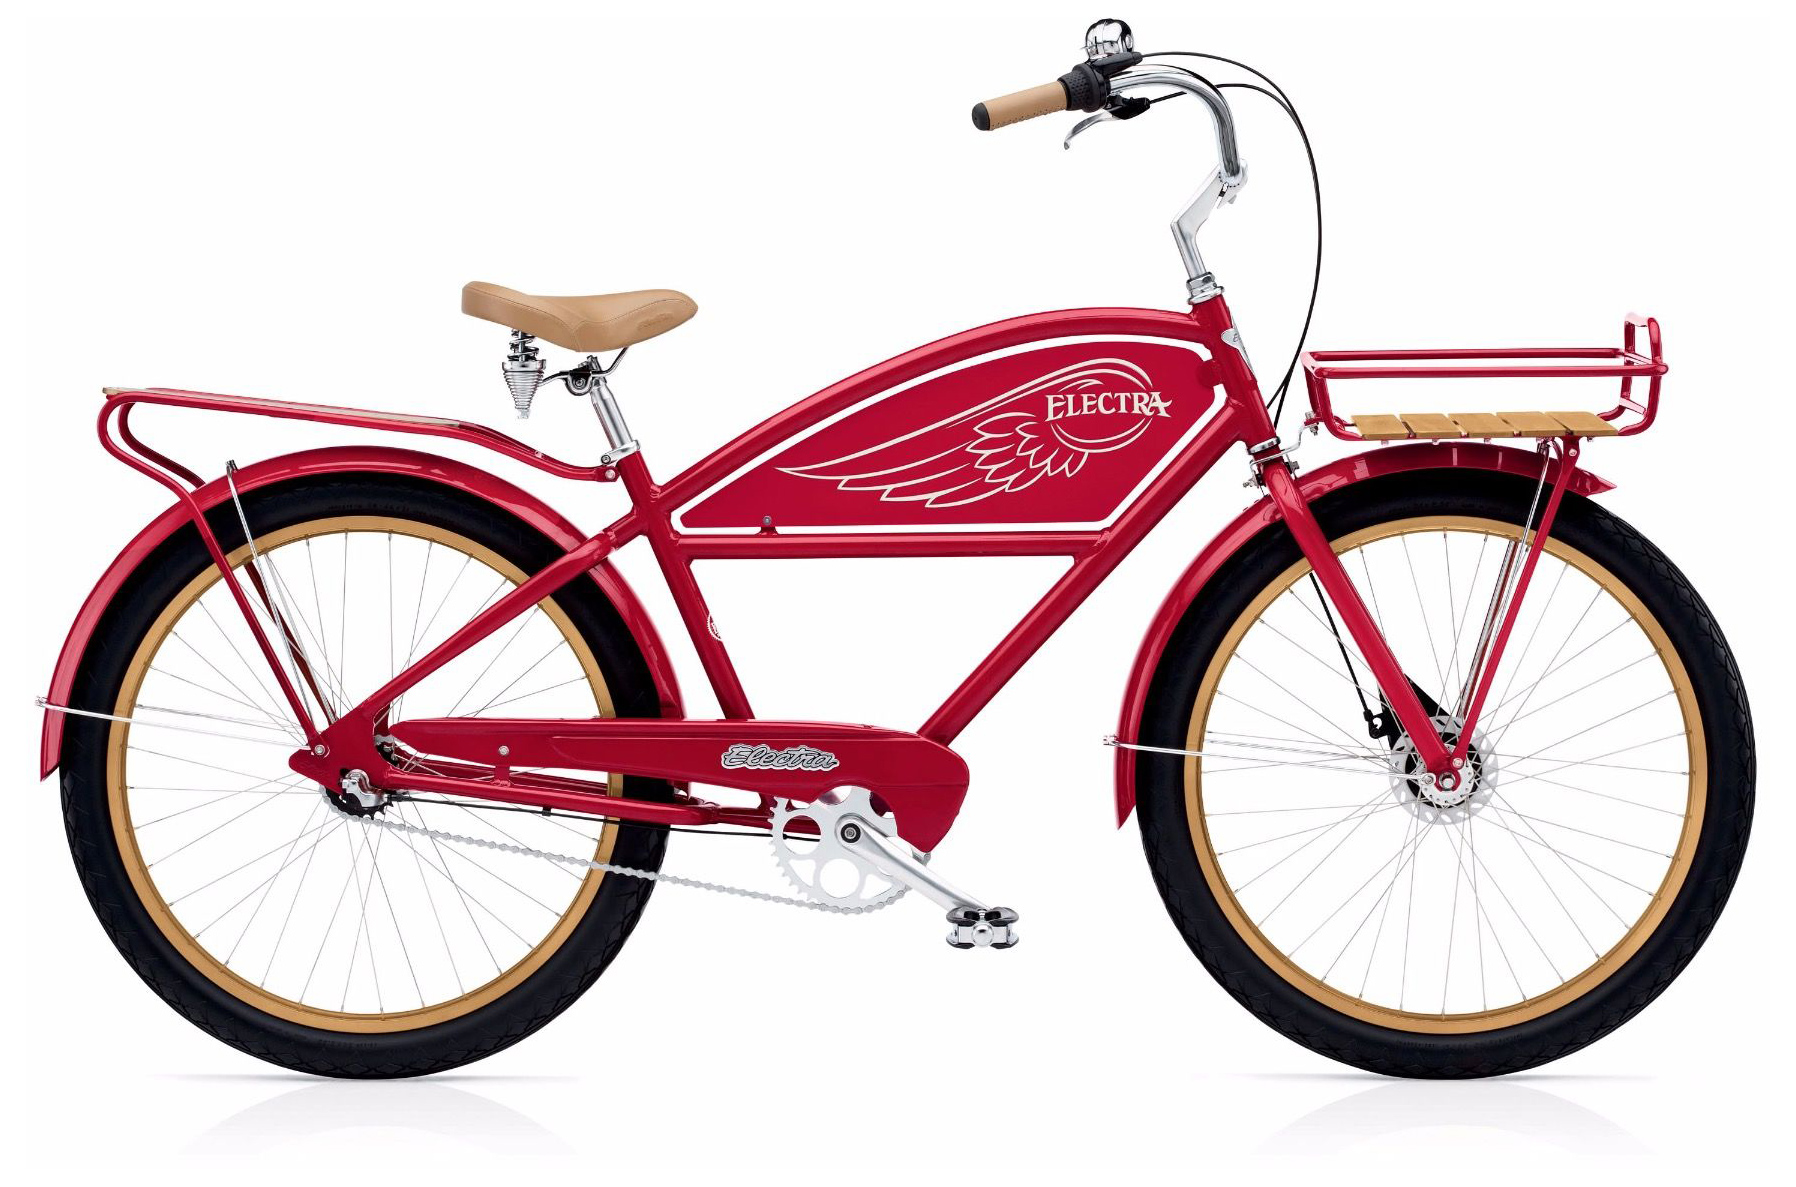  Отзывы о Велосипеде круизере Electra Delivery 3i 2019